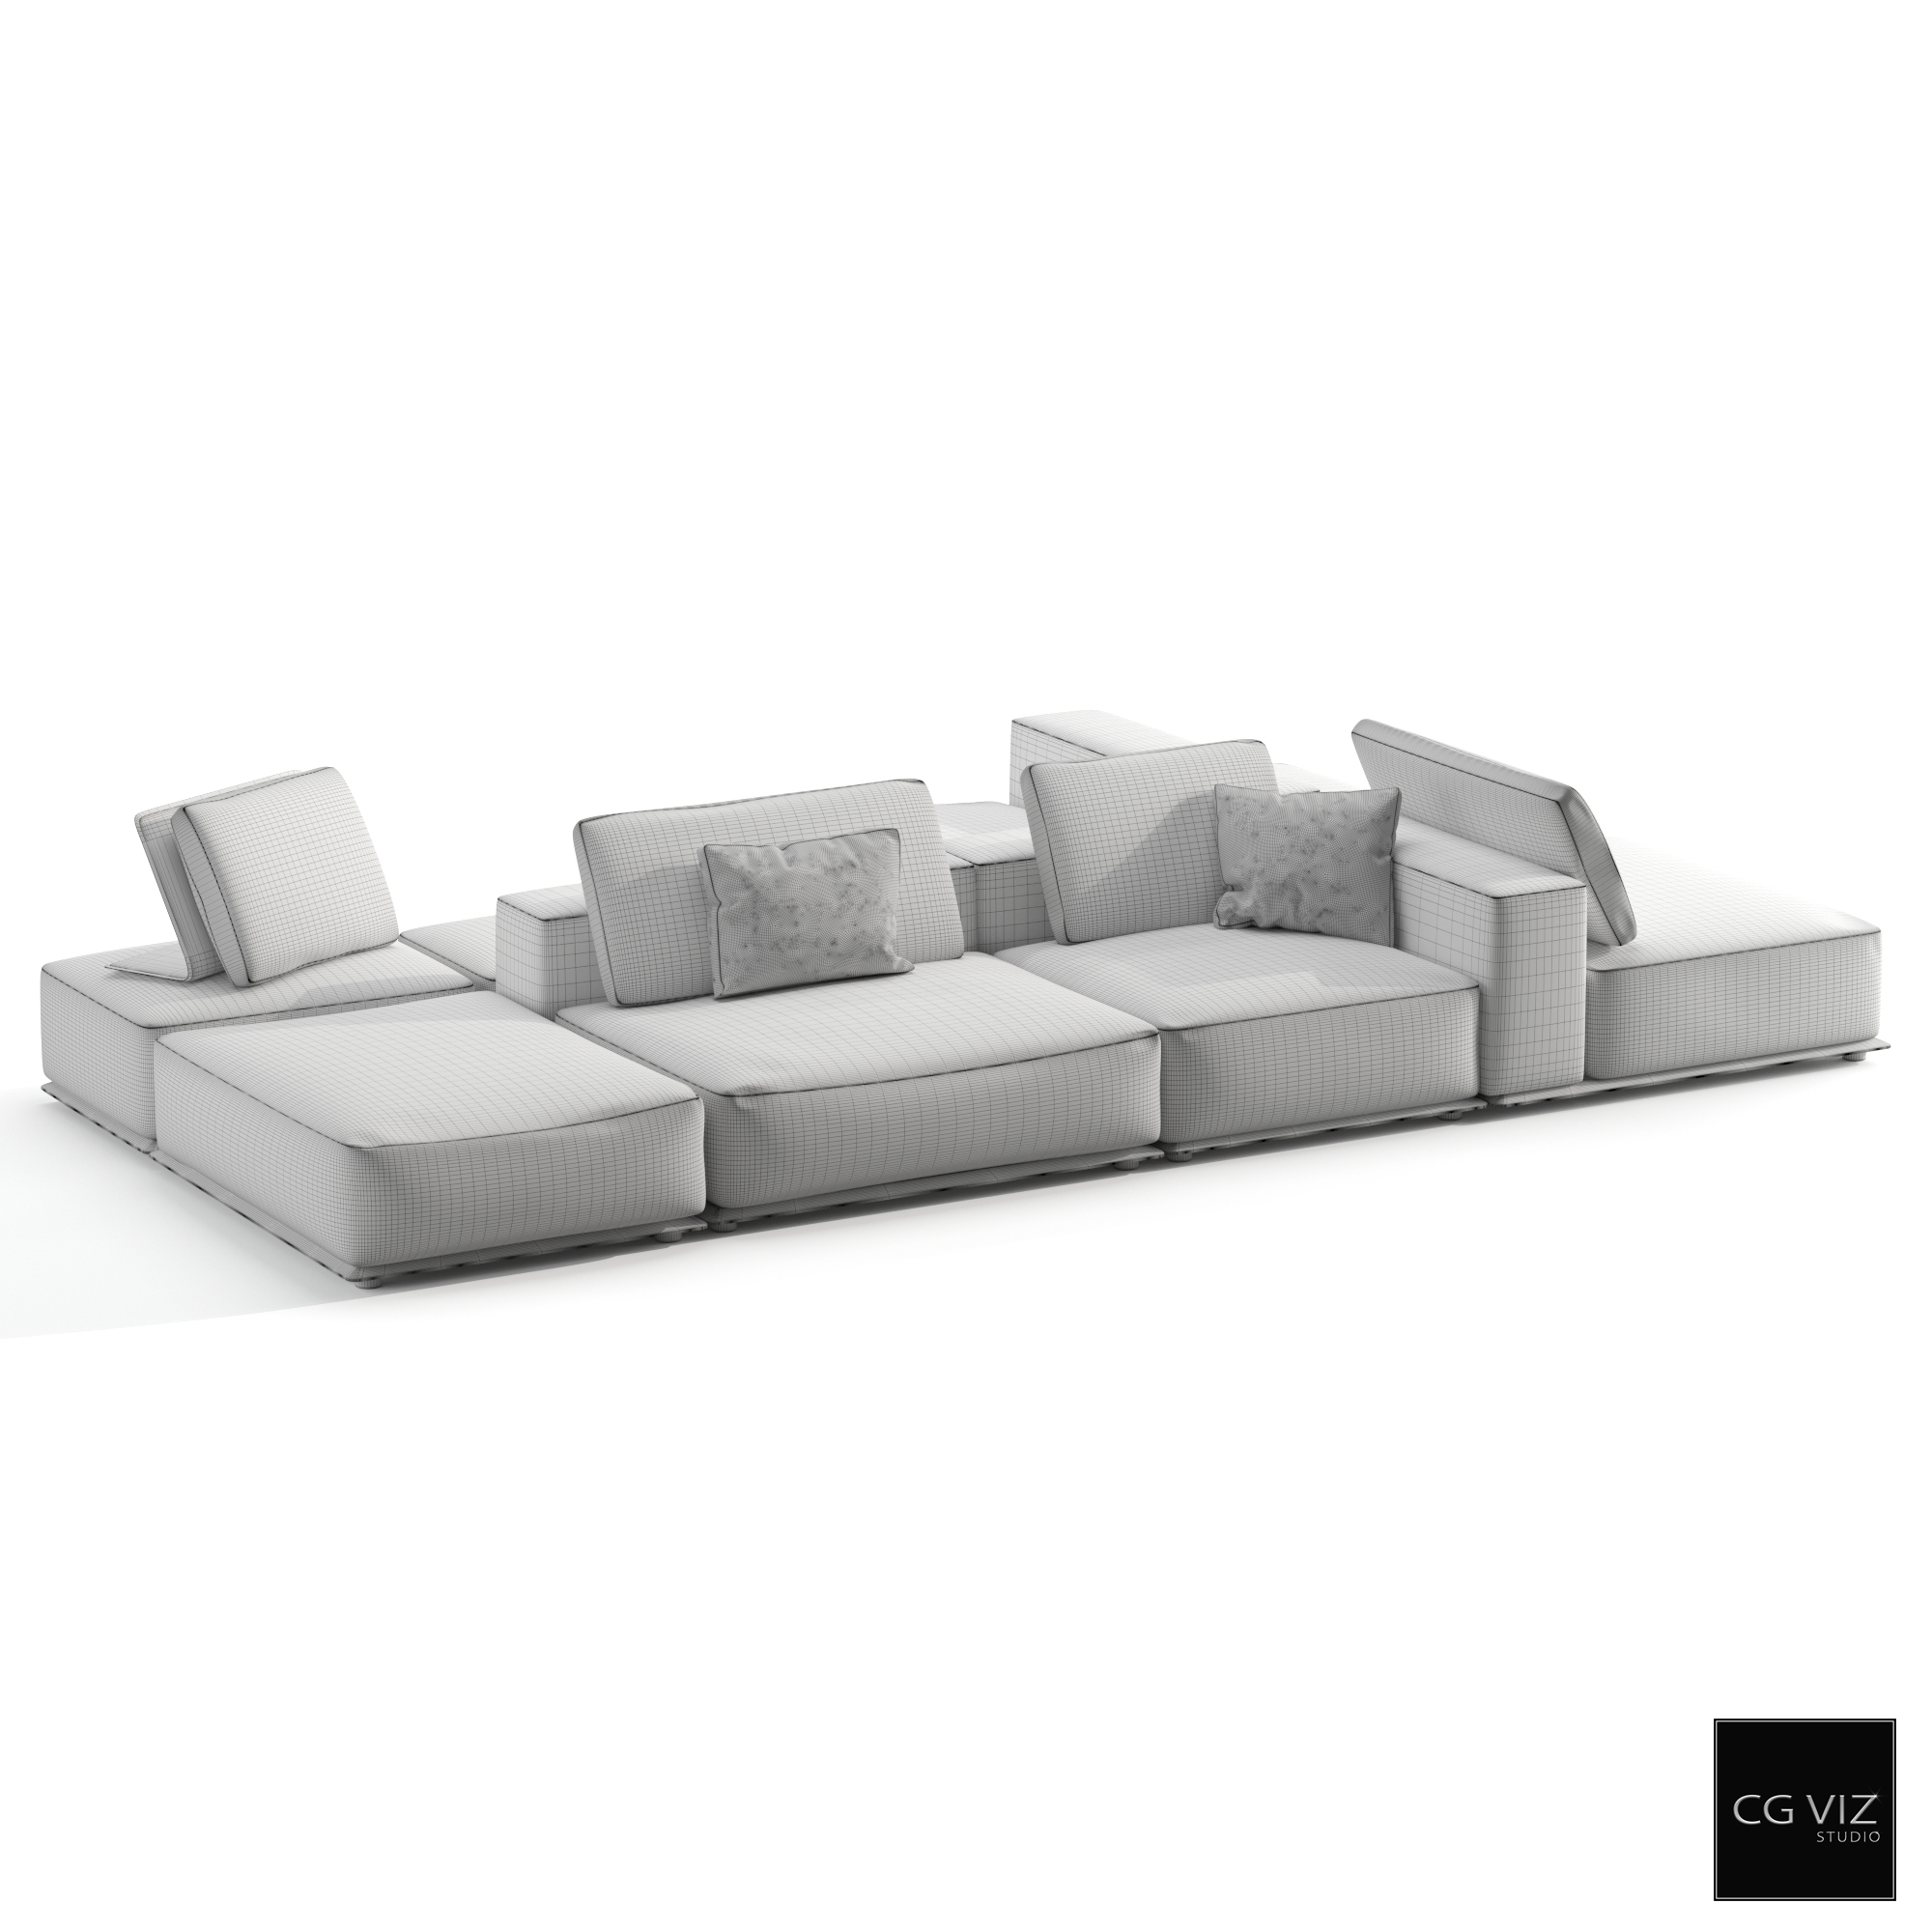 Wireframe View of Poliform Westside Sofa 3D Model